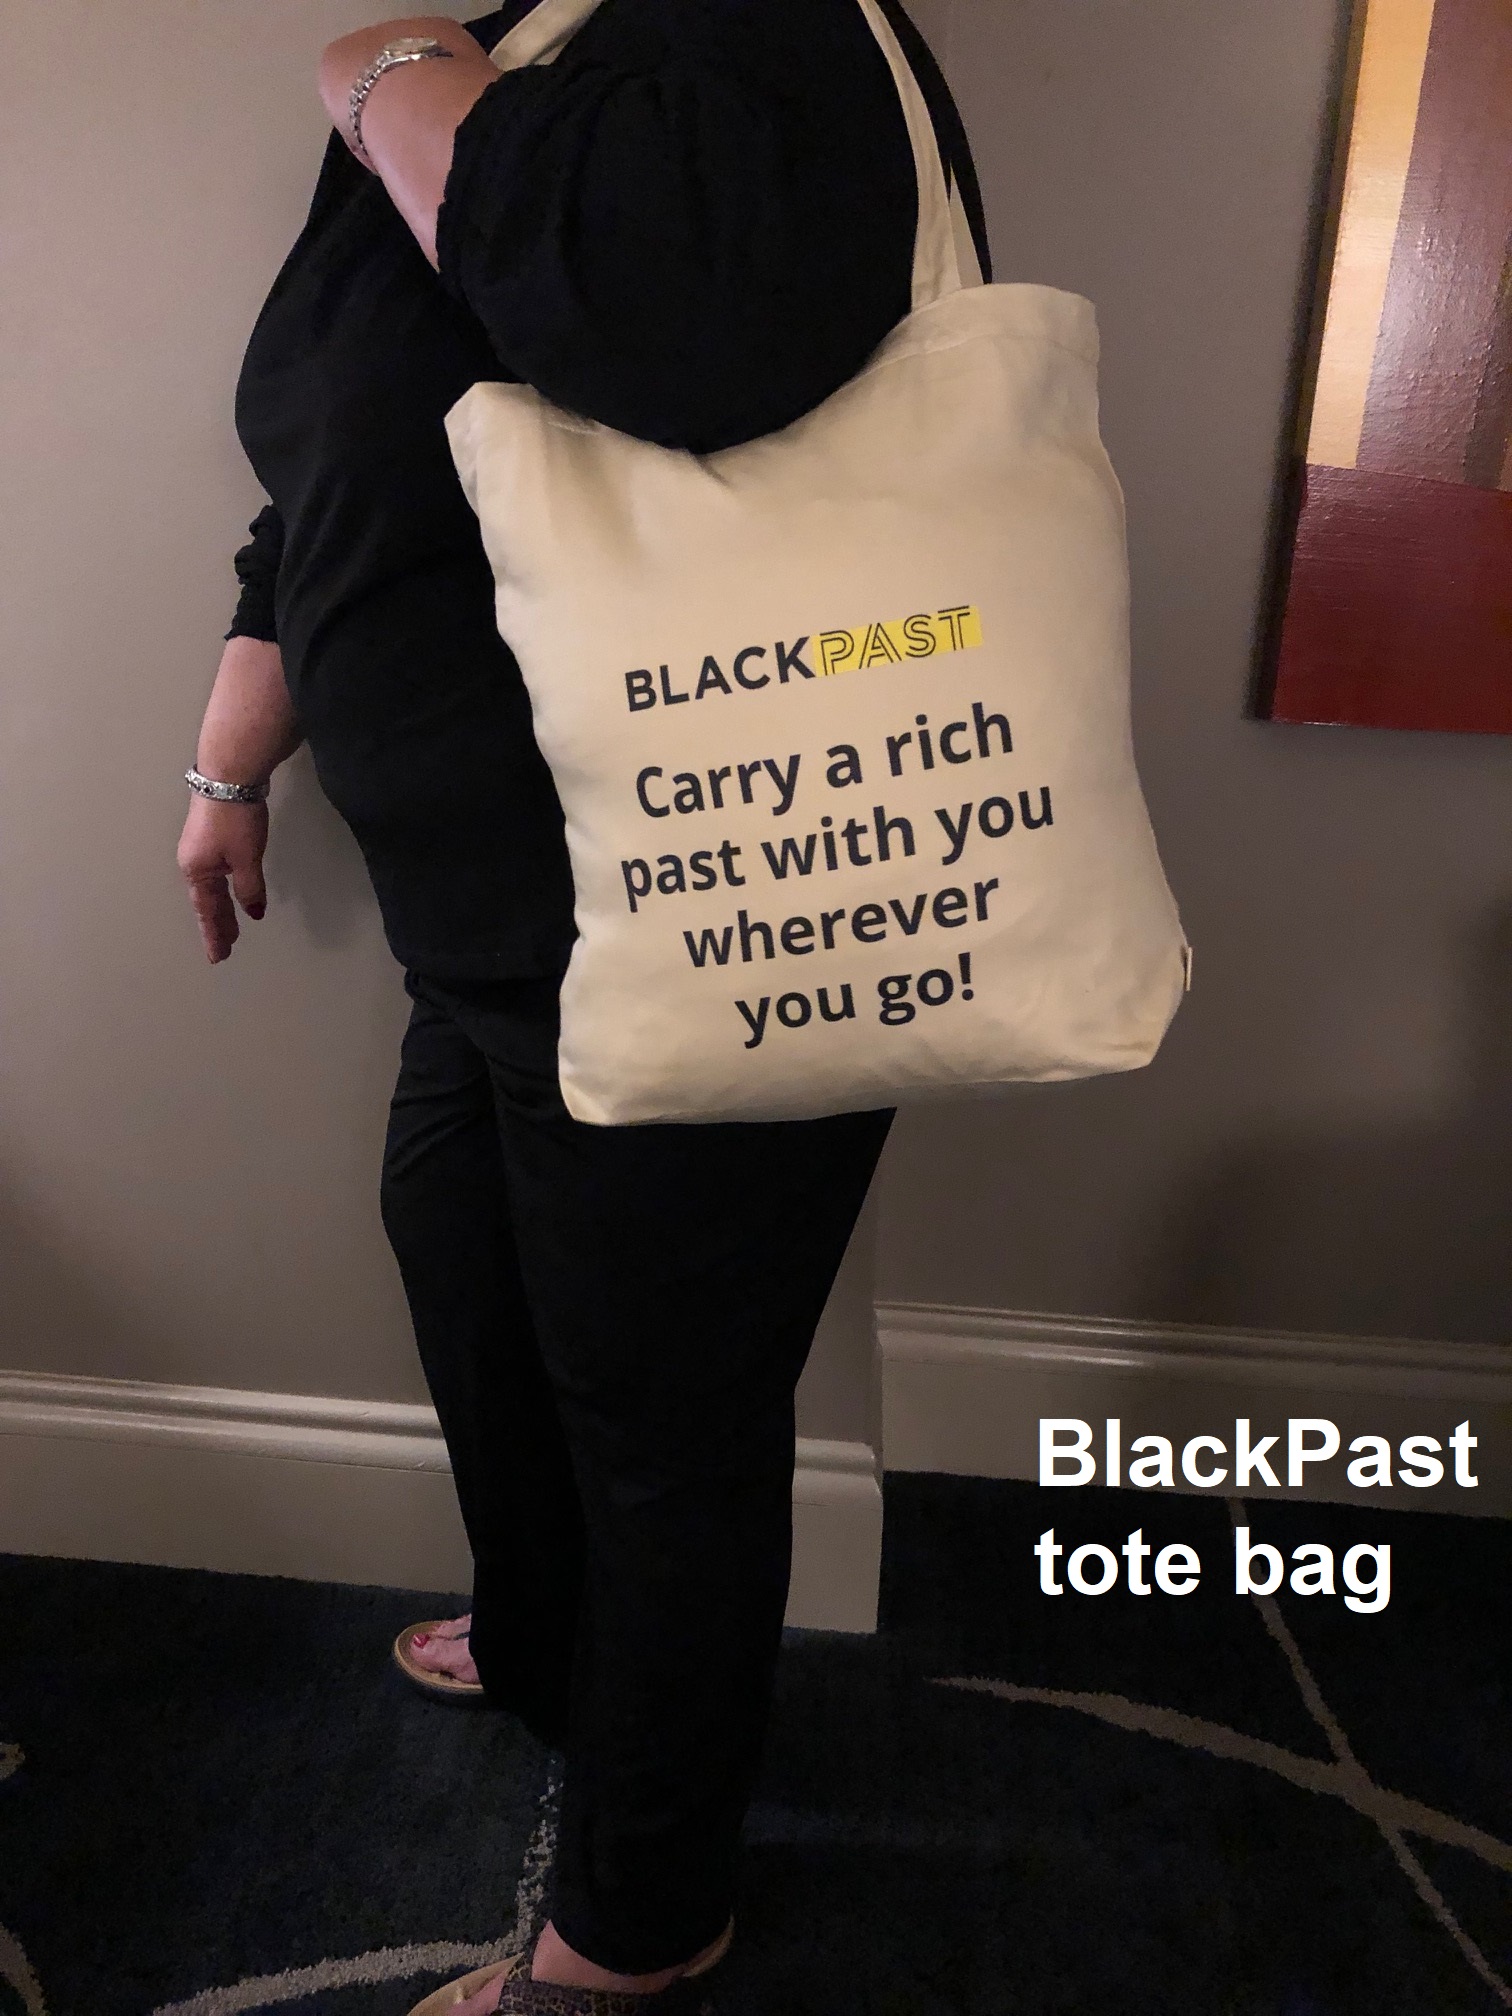 BlackPast tote bag